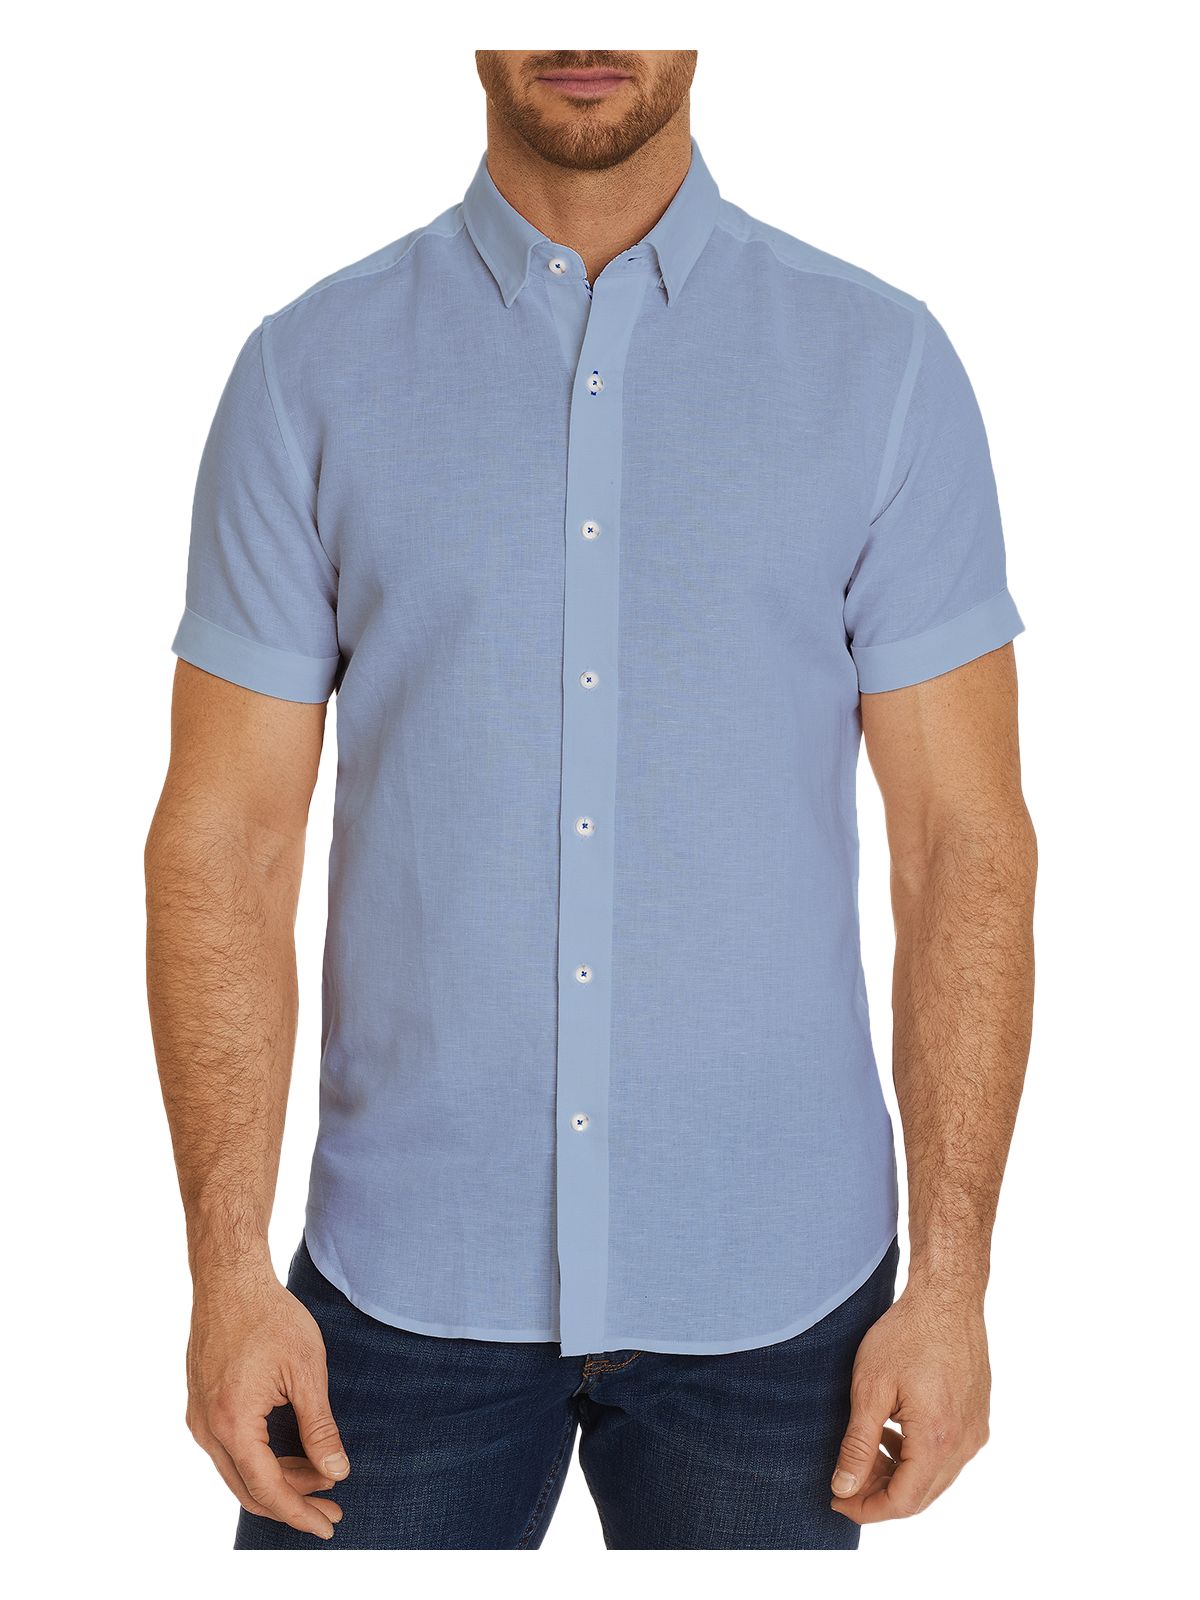 ROBERT GRAHAM Mens Bradley Light Blue Short Sleeve Slim Fit Button Down Casual Shirt XL